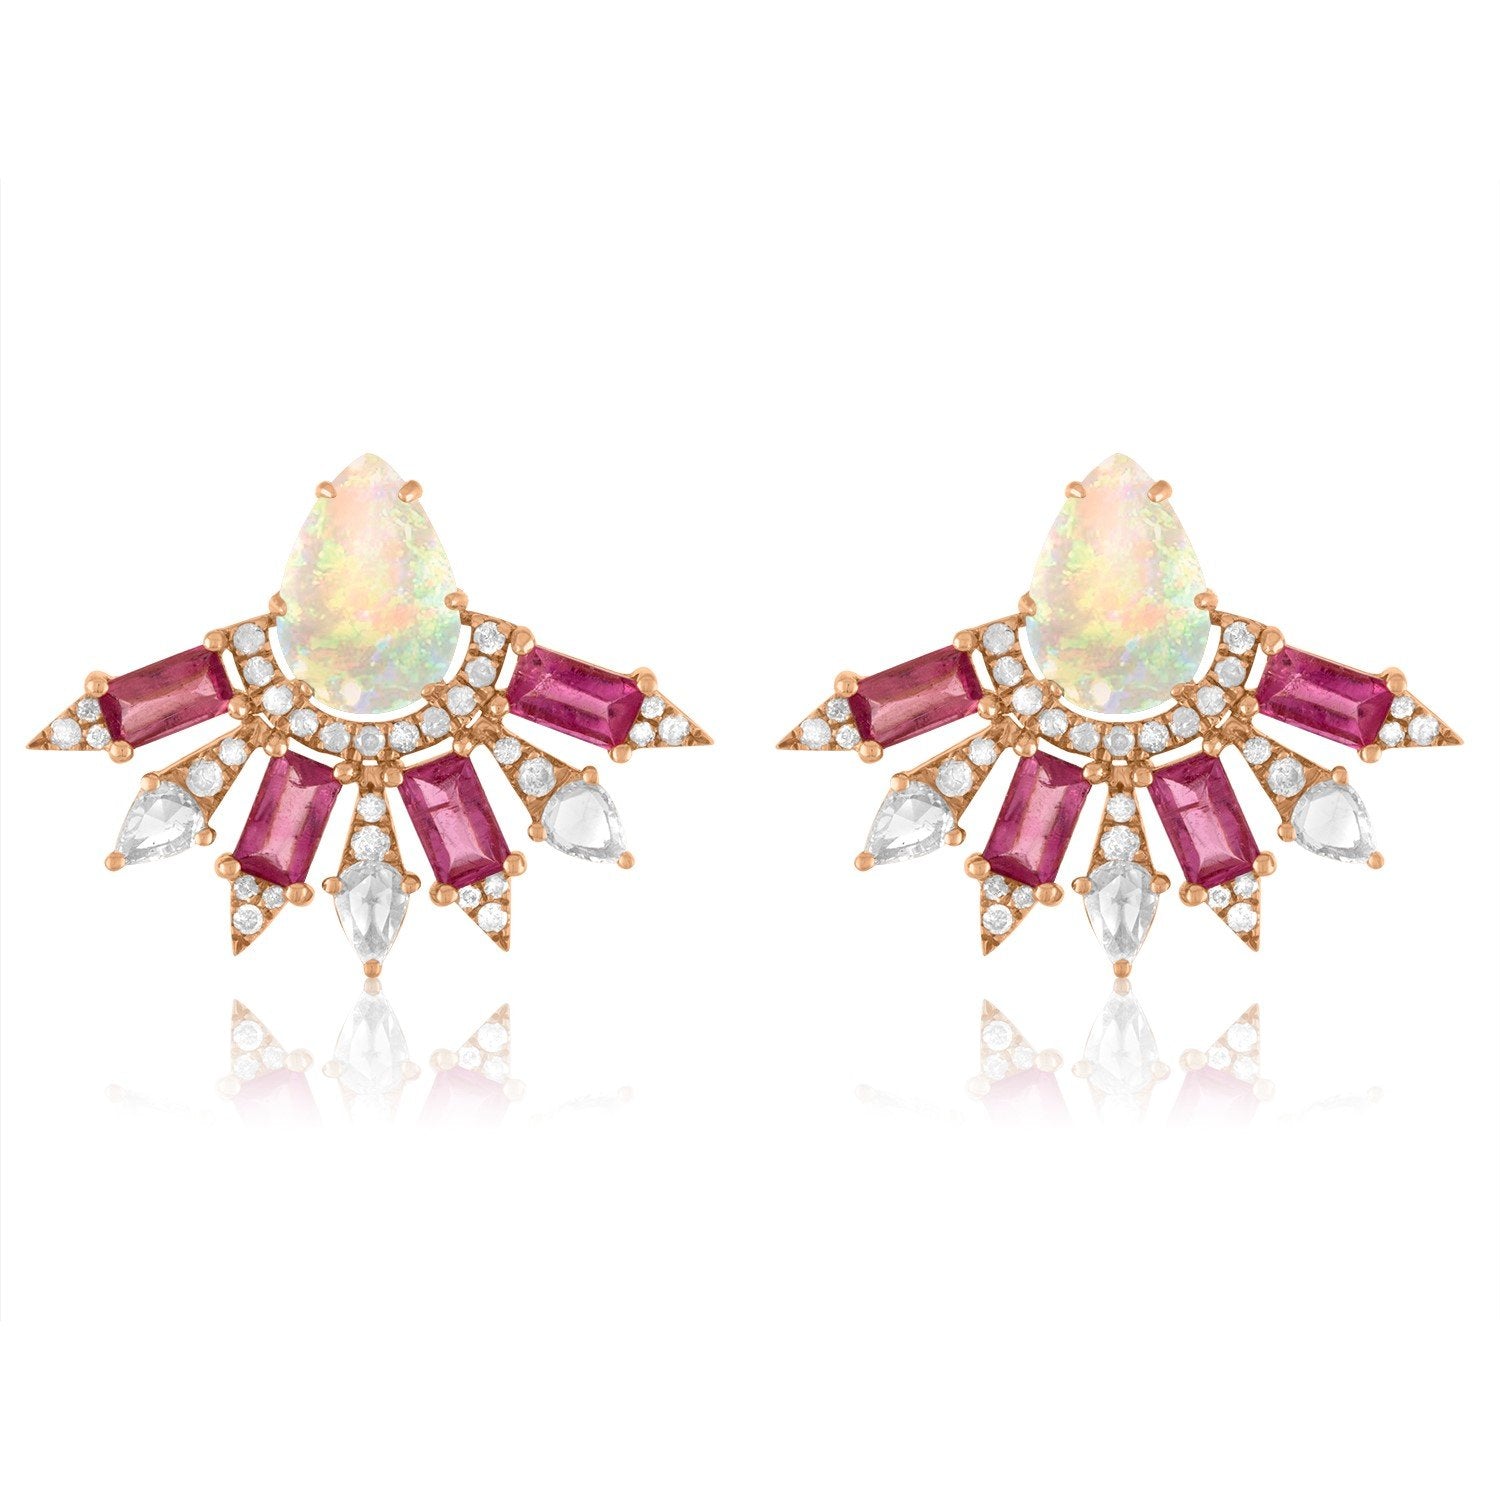 Vincents Fine Jewelry | Jane Kaye | Small Fan Opal Earrings